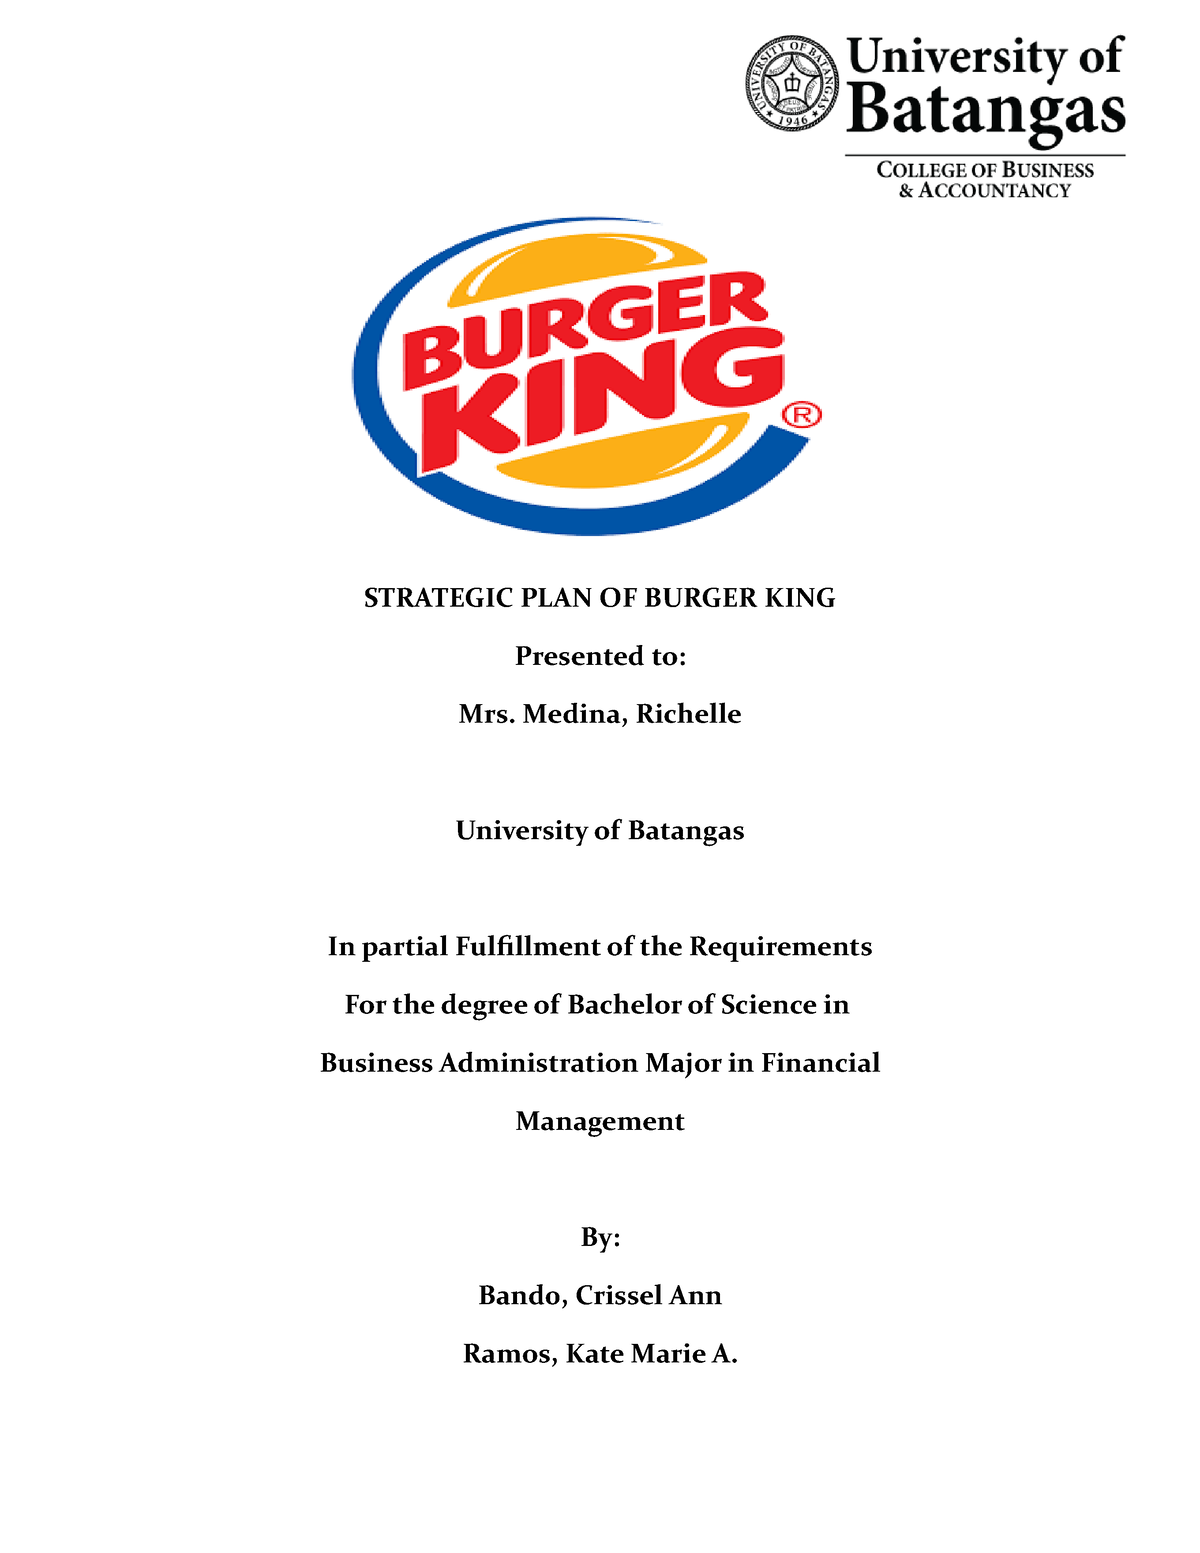 burger king business plan